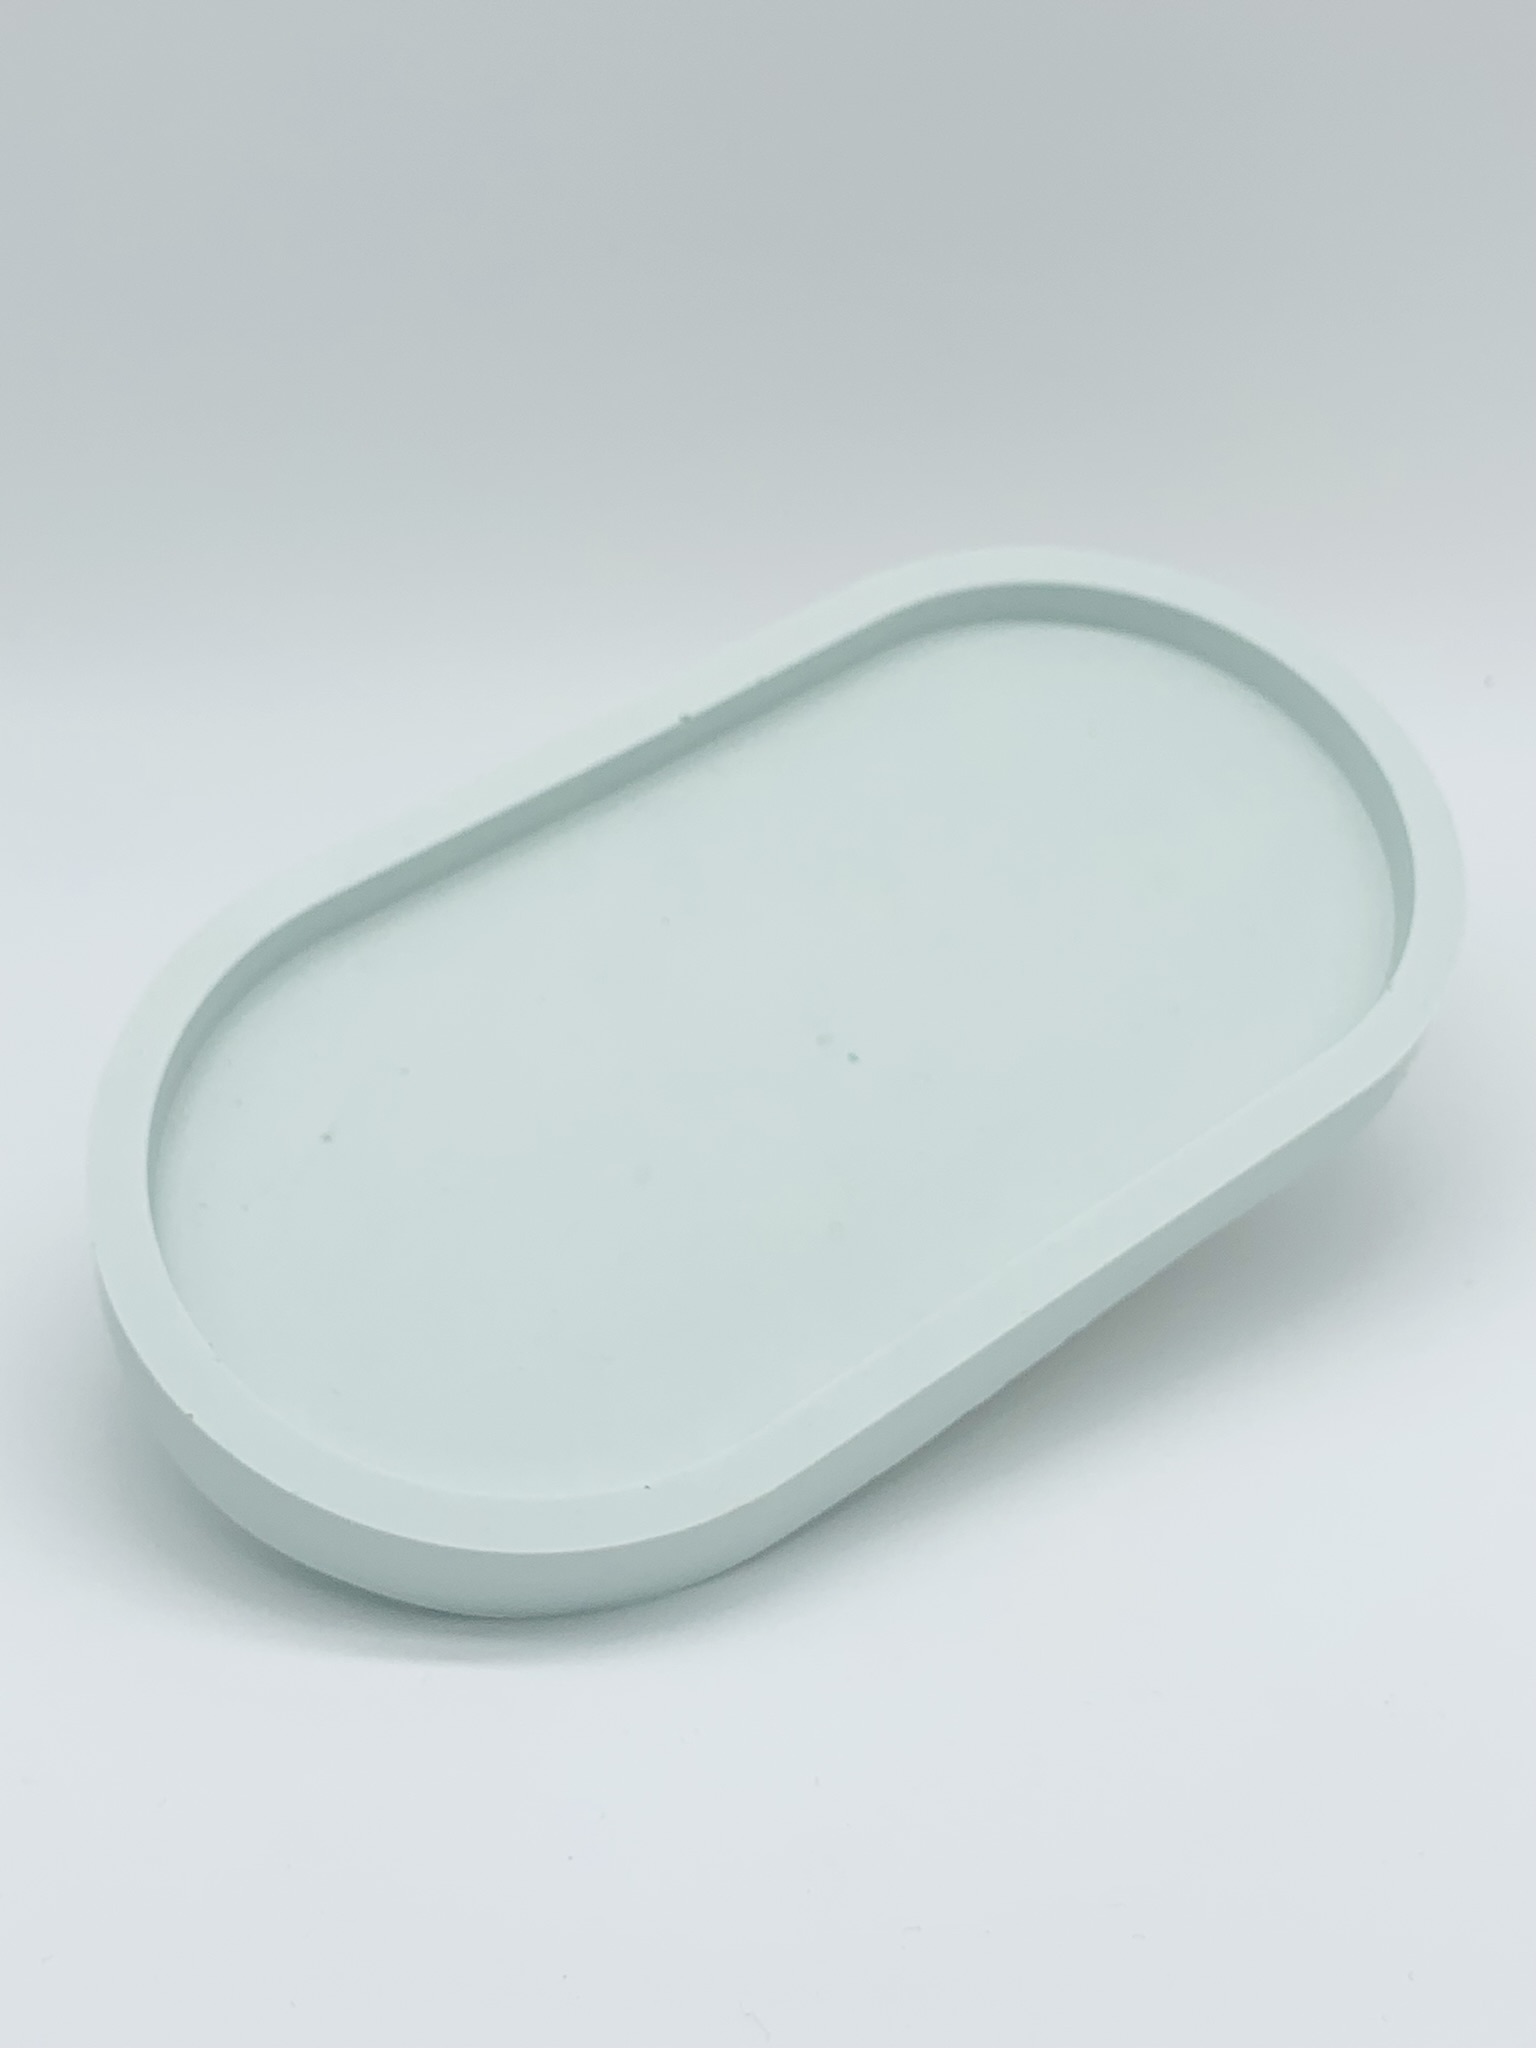 Billede af 'Pastel blå' - Oval Trinket Tray skål